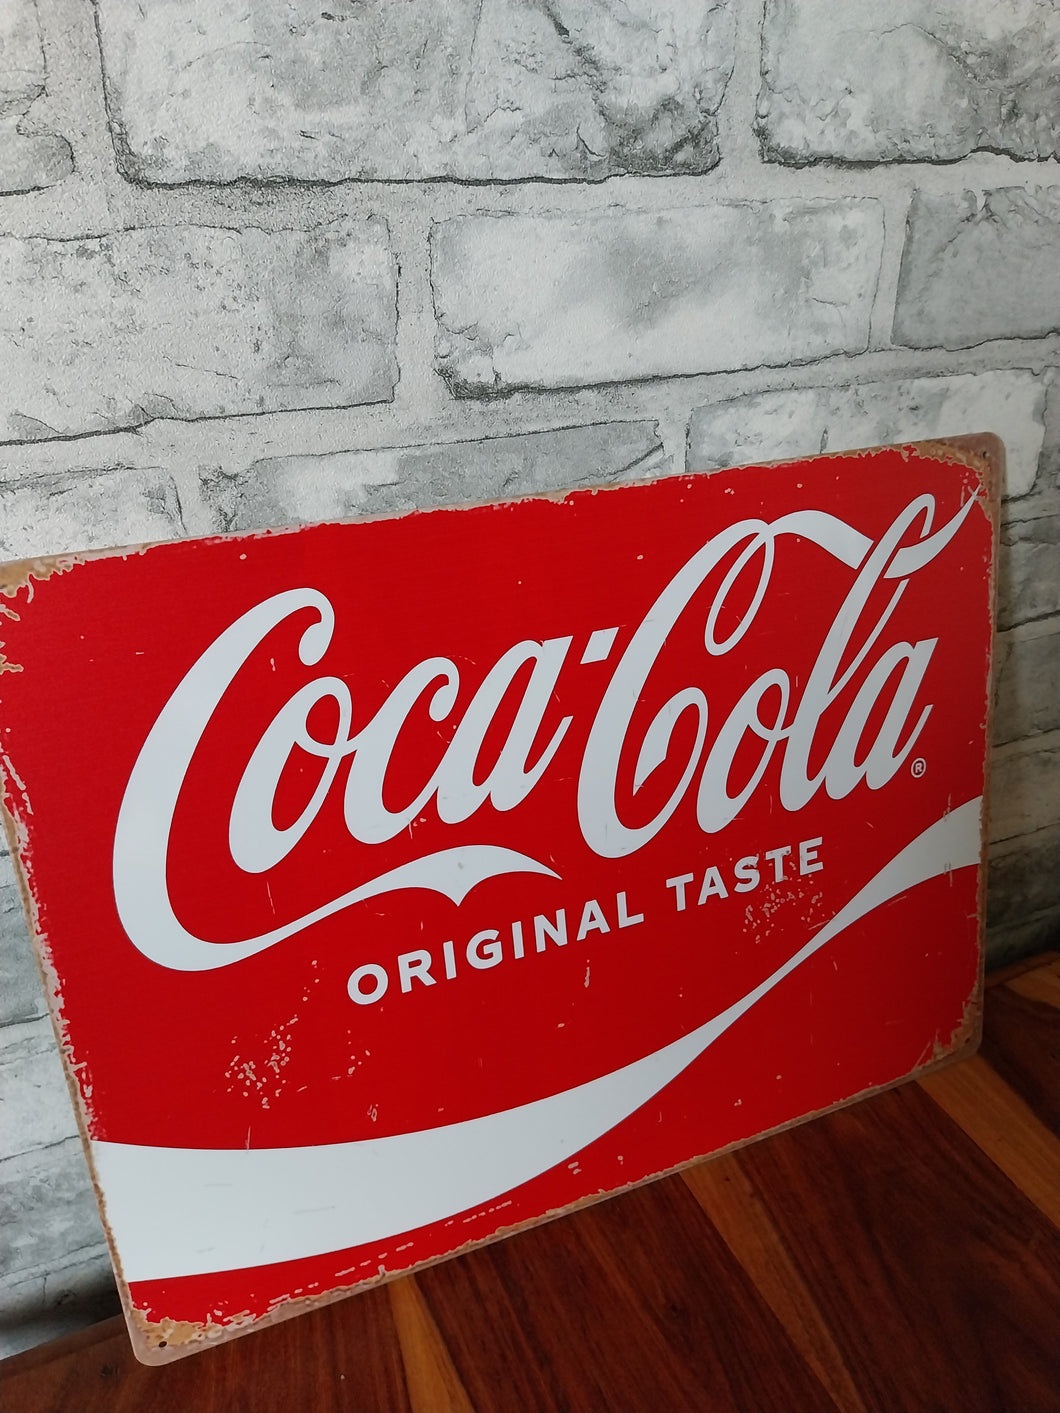 Coca cola vintage style metal sign